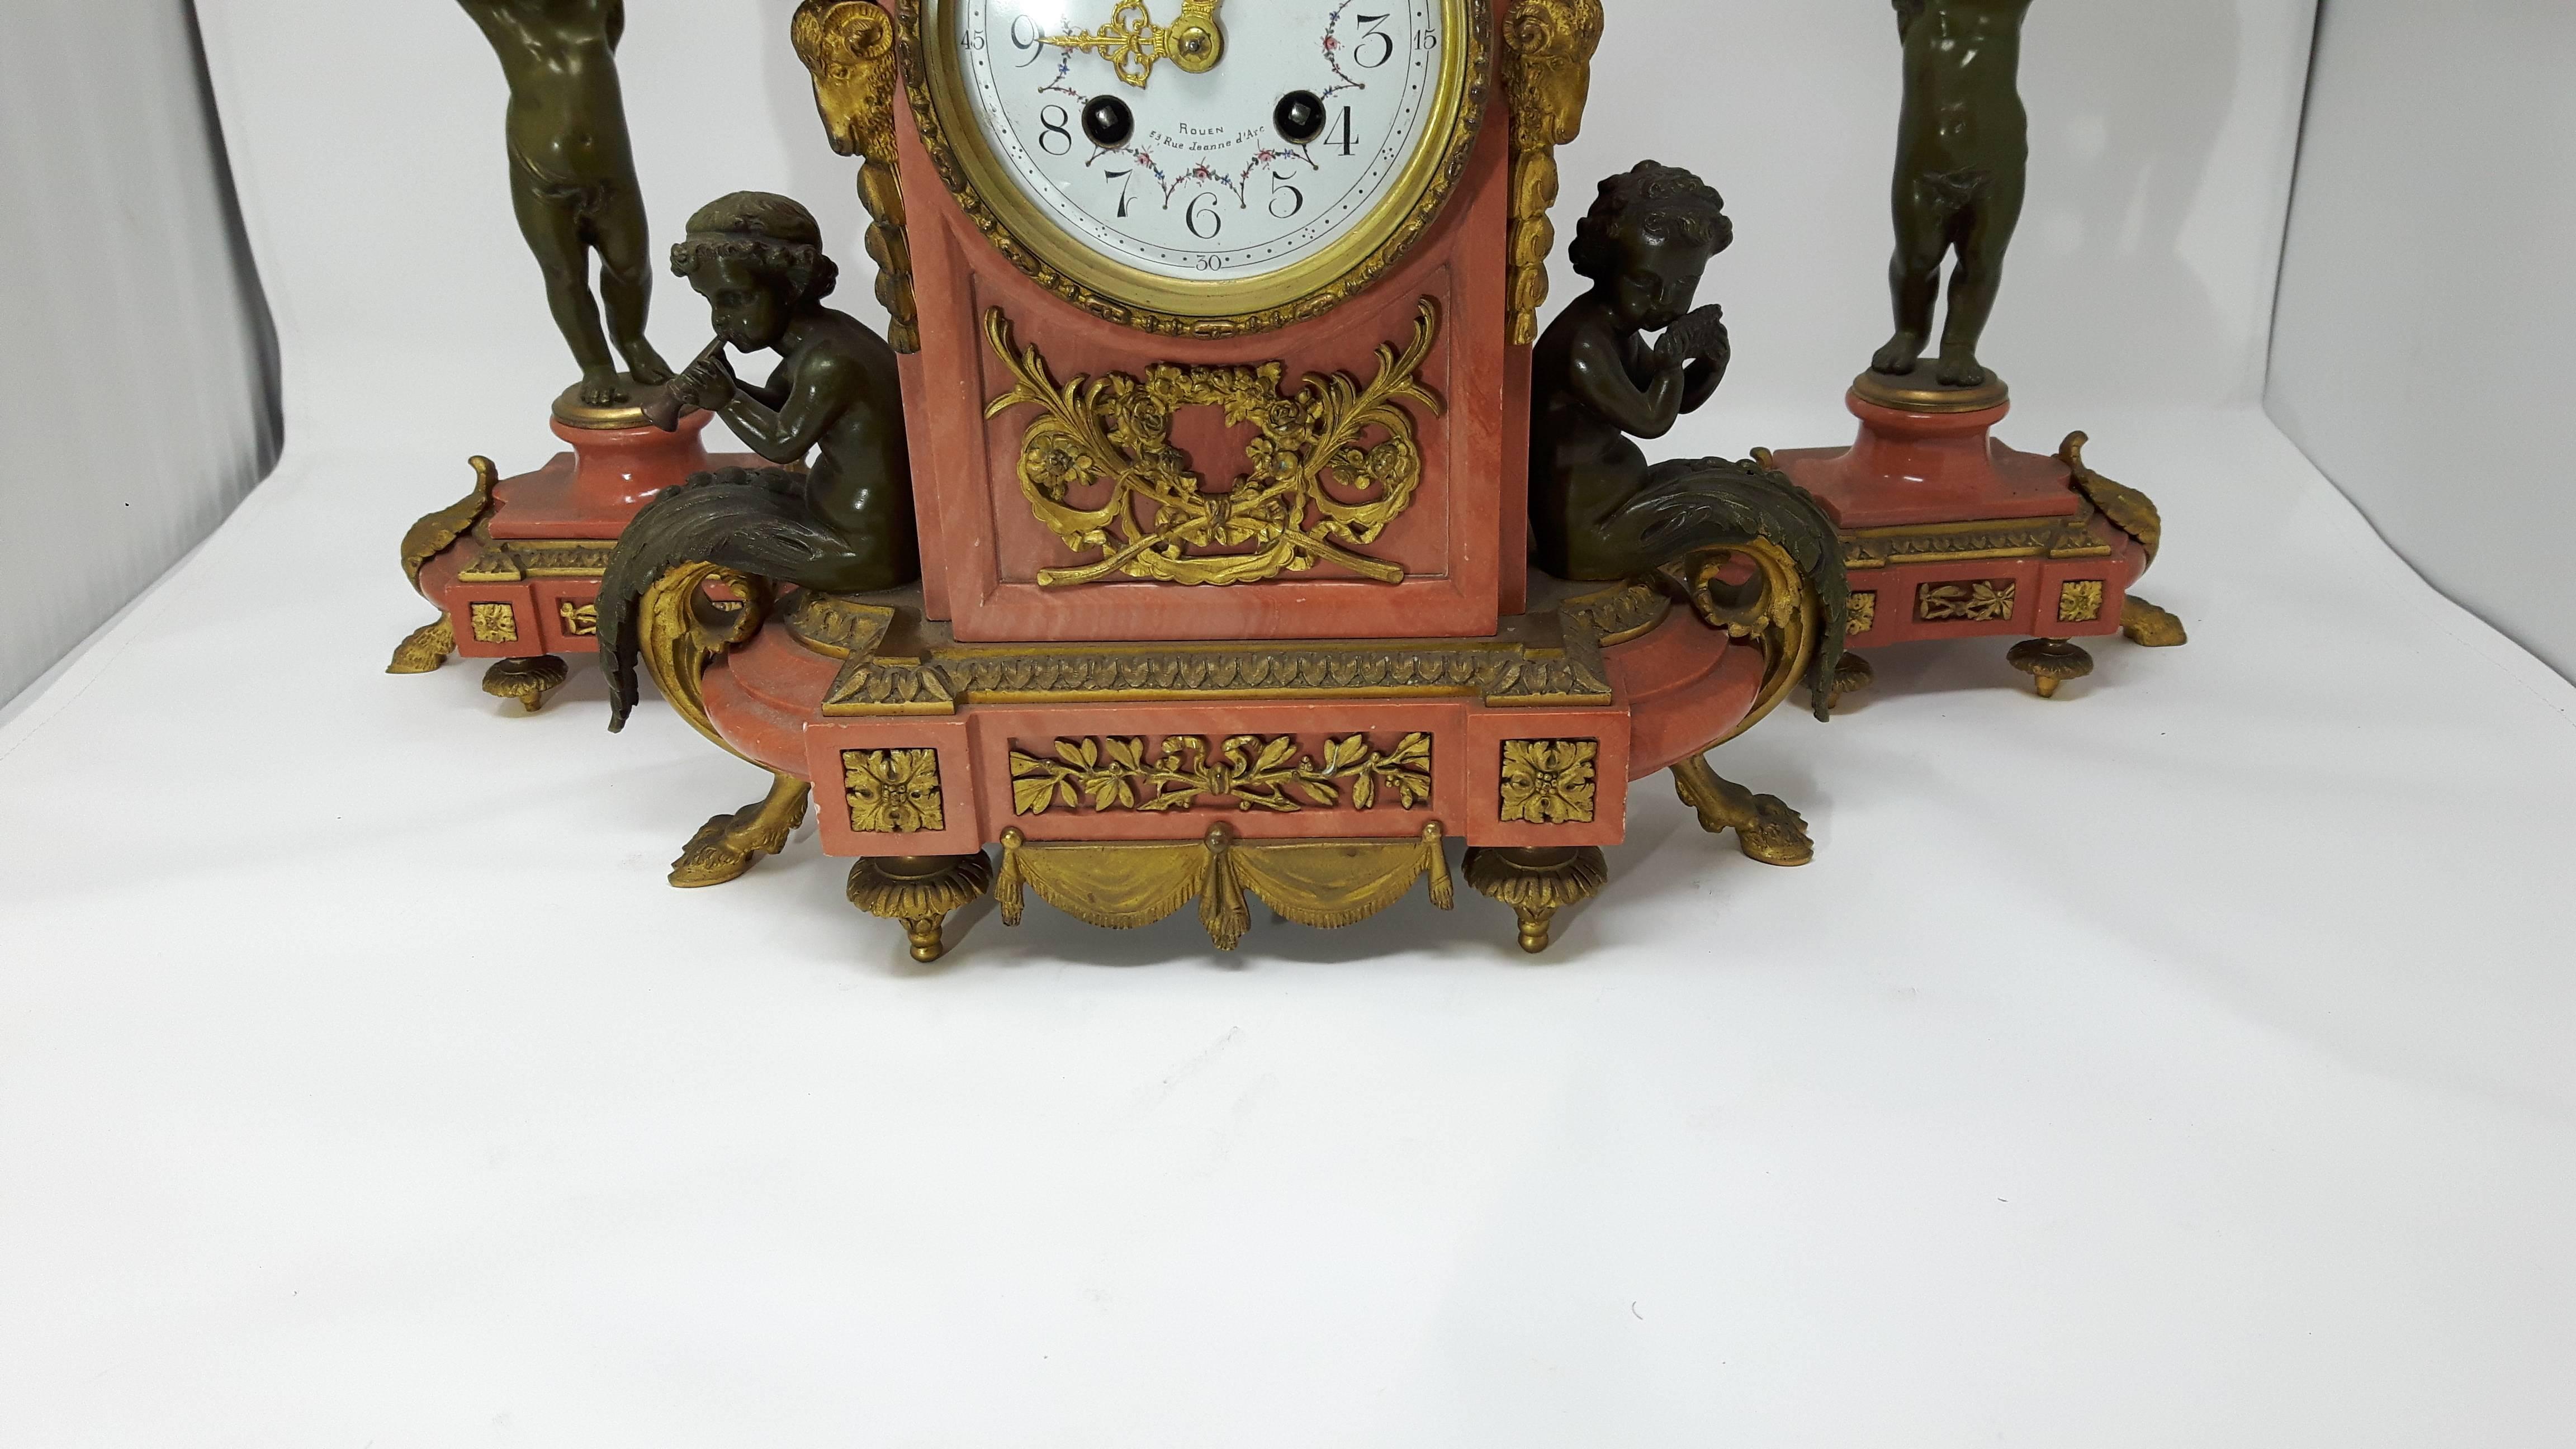 Un ensemble de trois pièces d'horlogerie française en marbre rouge doré et en bronze de haute qualité comprenant
deux candélabres à trois branches et une horloge de cheminée.
L'horloge présente un émail blanc et des fleurs compensées par des